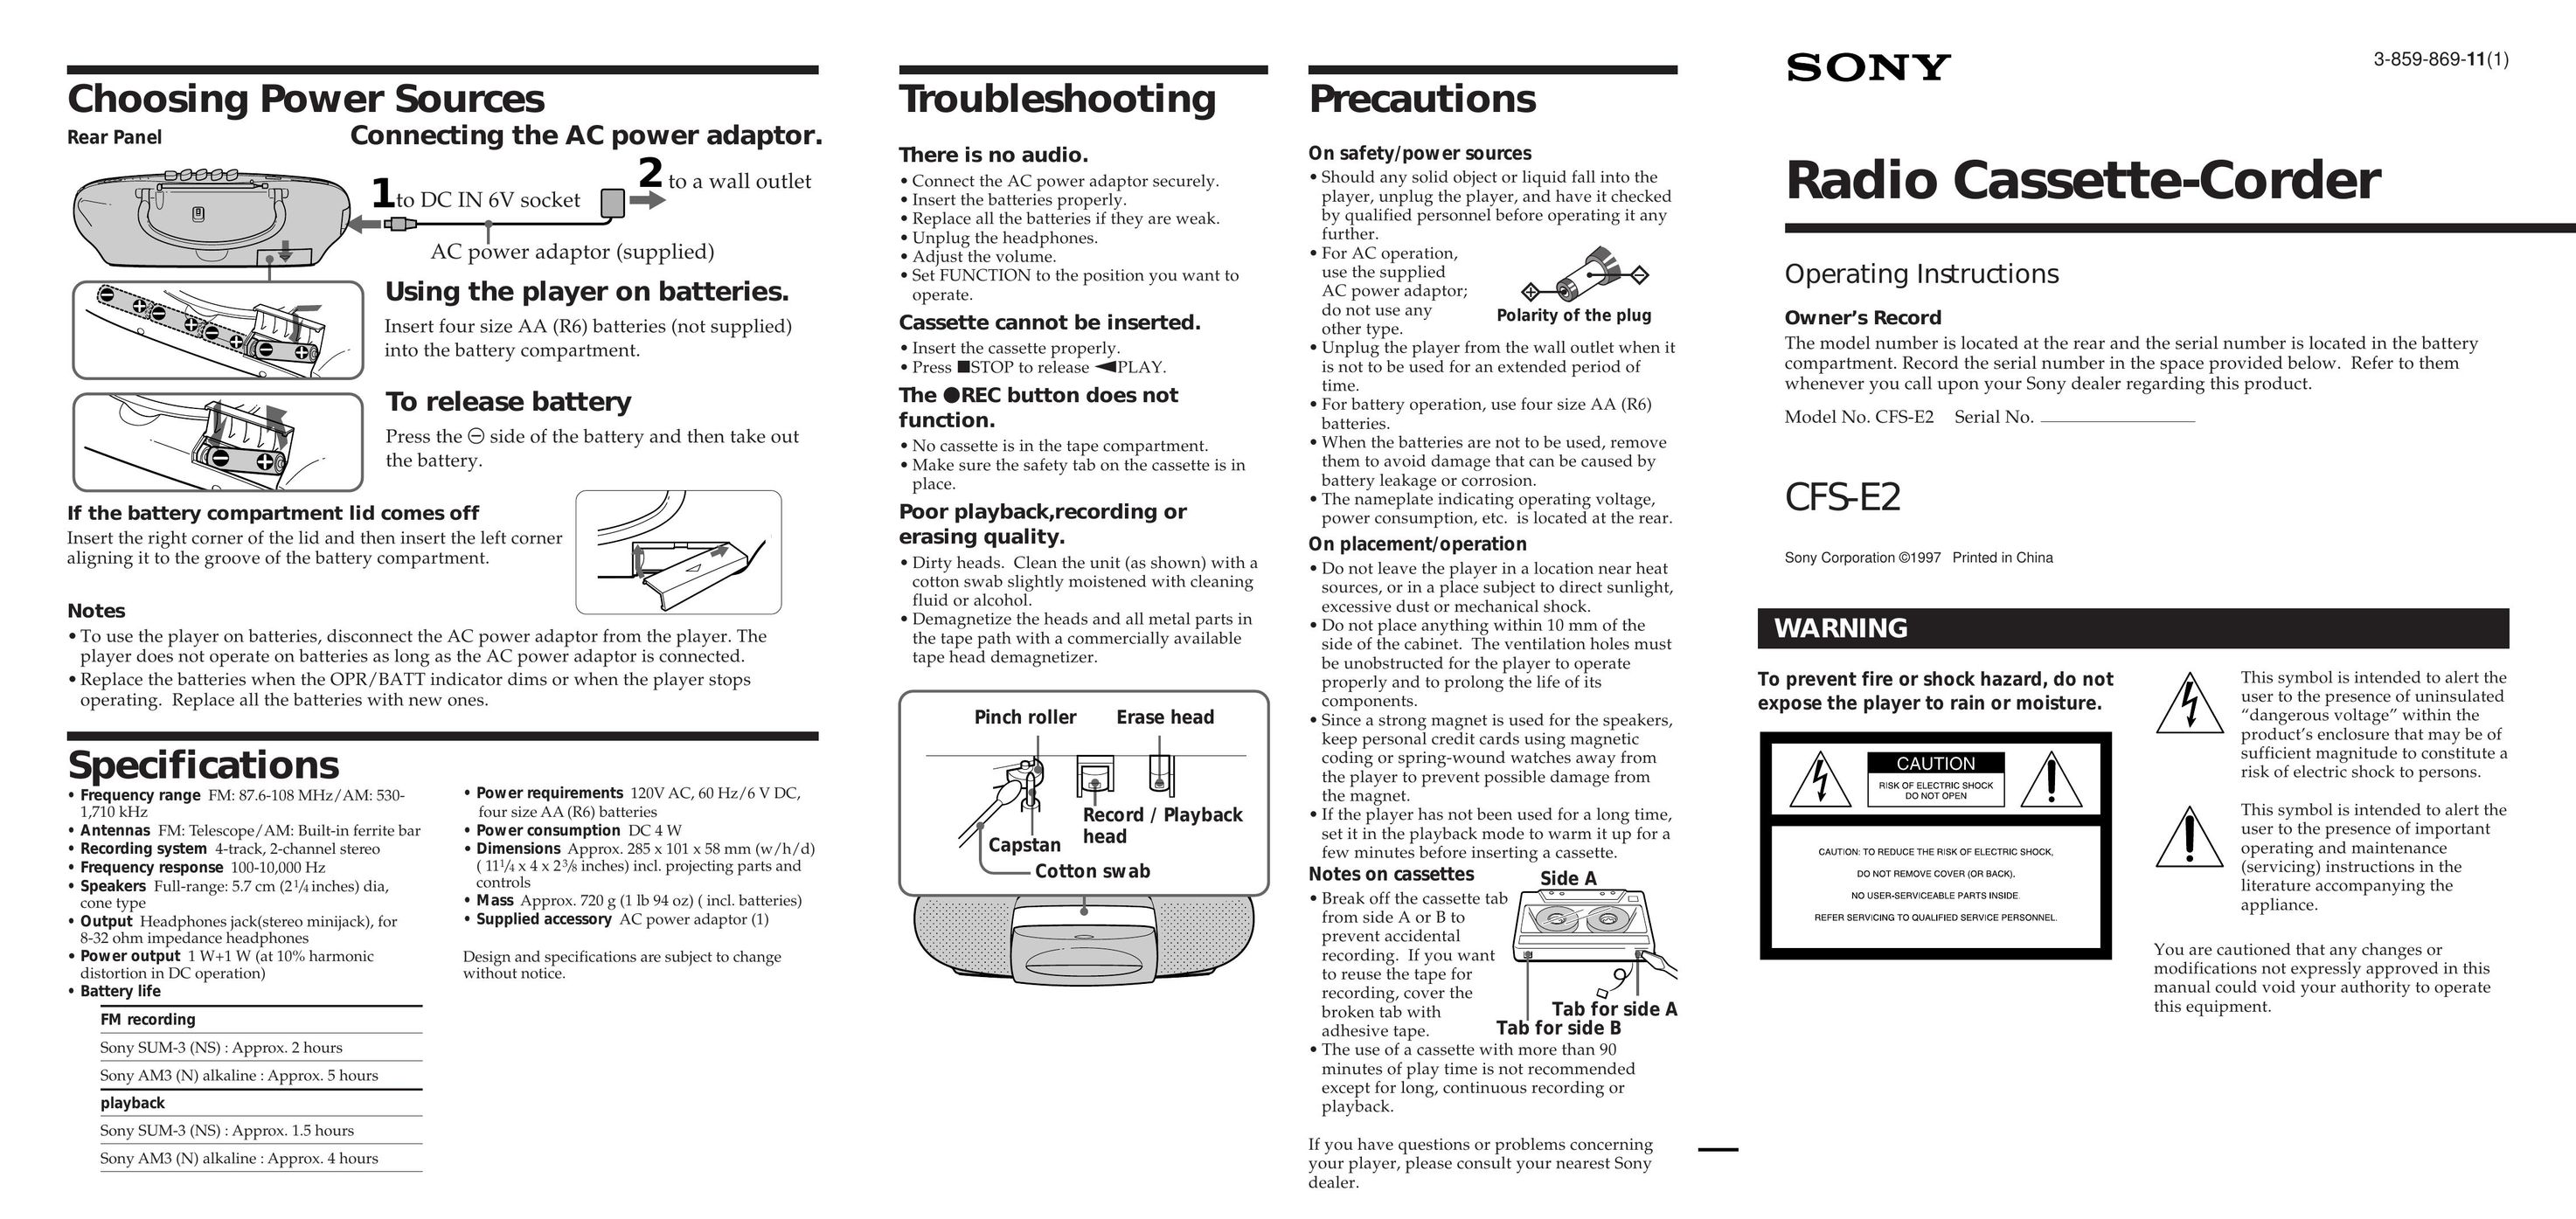 Sony CFS-E2 Cassette Player User Manual